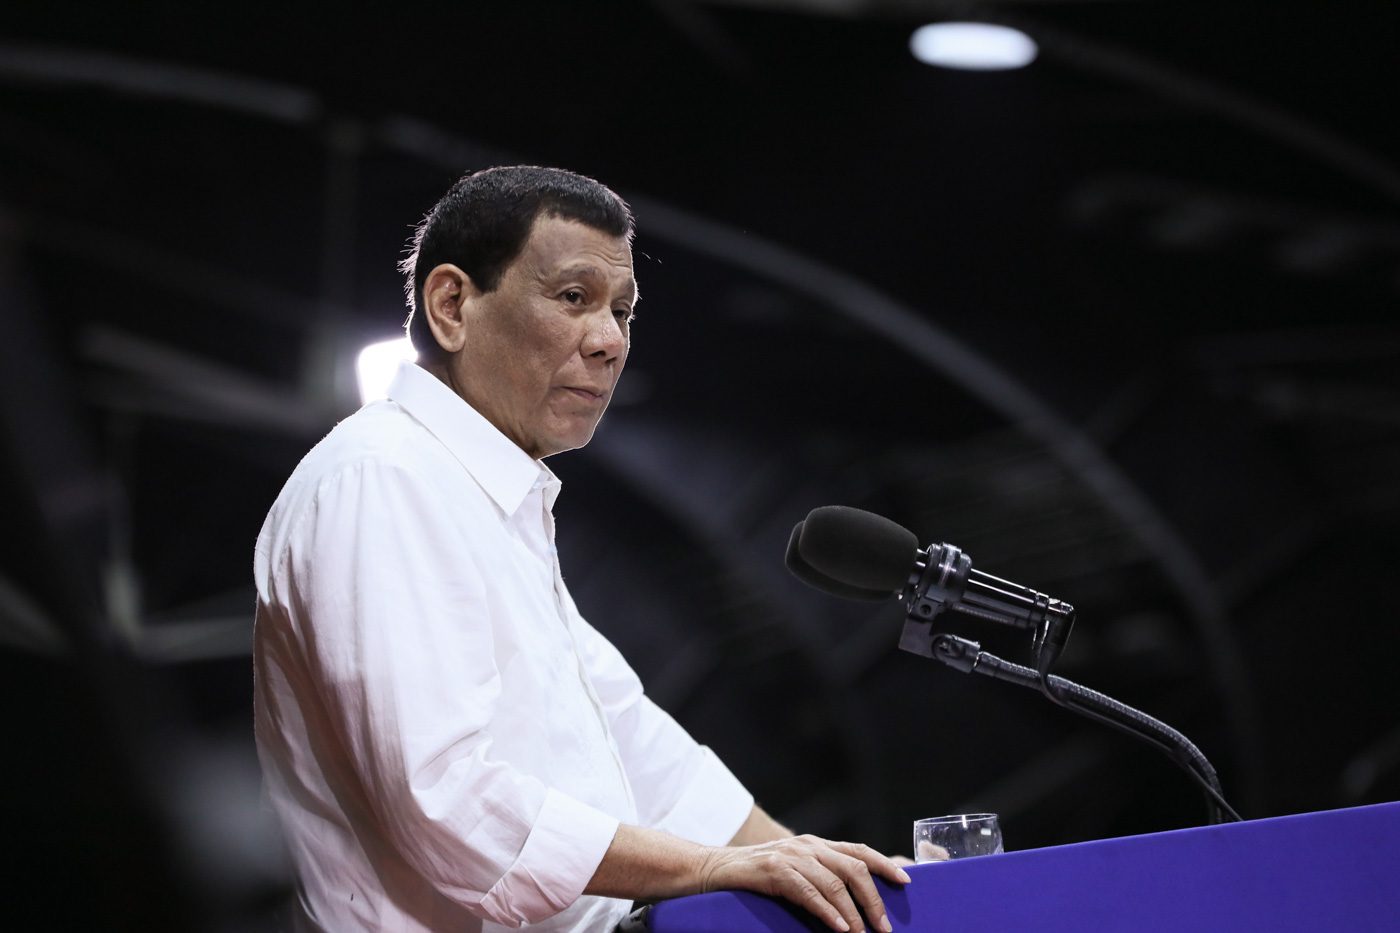 Amid Negros killings, Duterte warns of doing ‘something drastic’